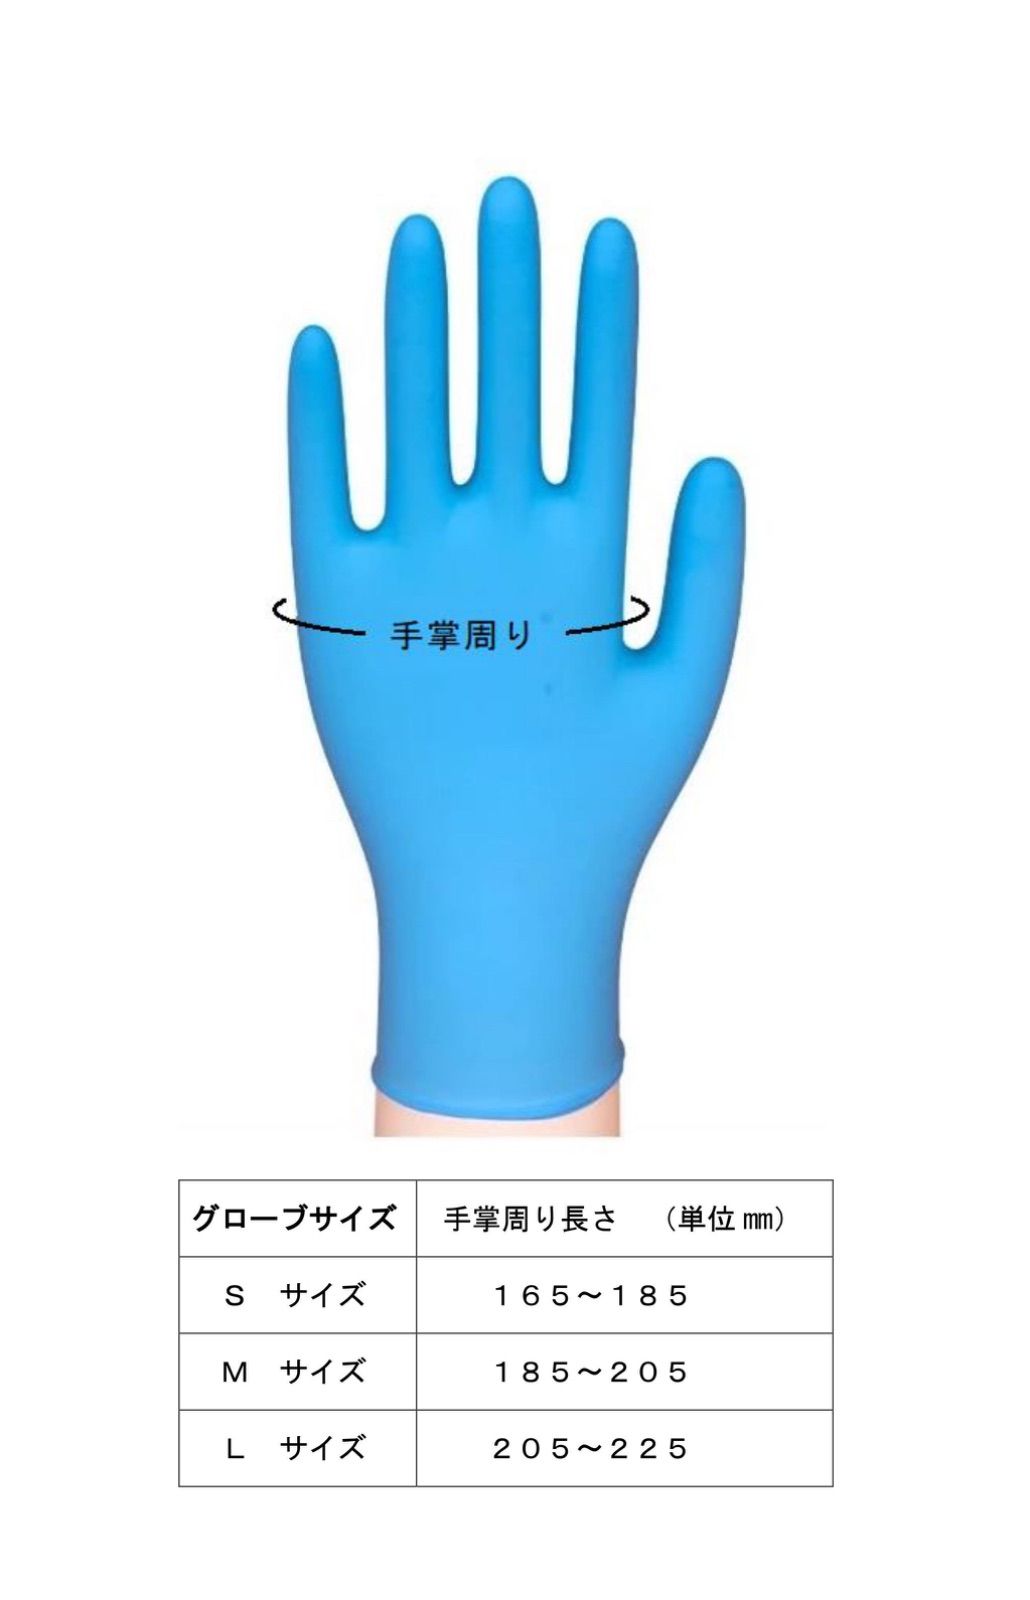 ニトリル手袋 Lサイズ 100枚入り 食品衛生法適合 使い捨て手袋 ゴム手袋 メルカリShops